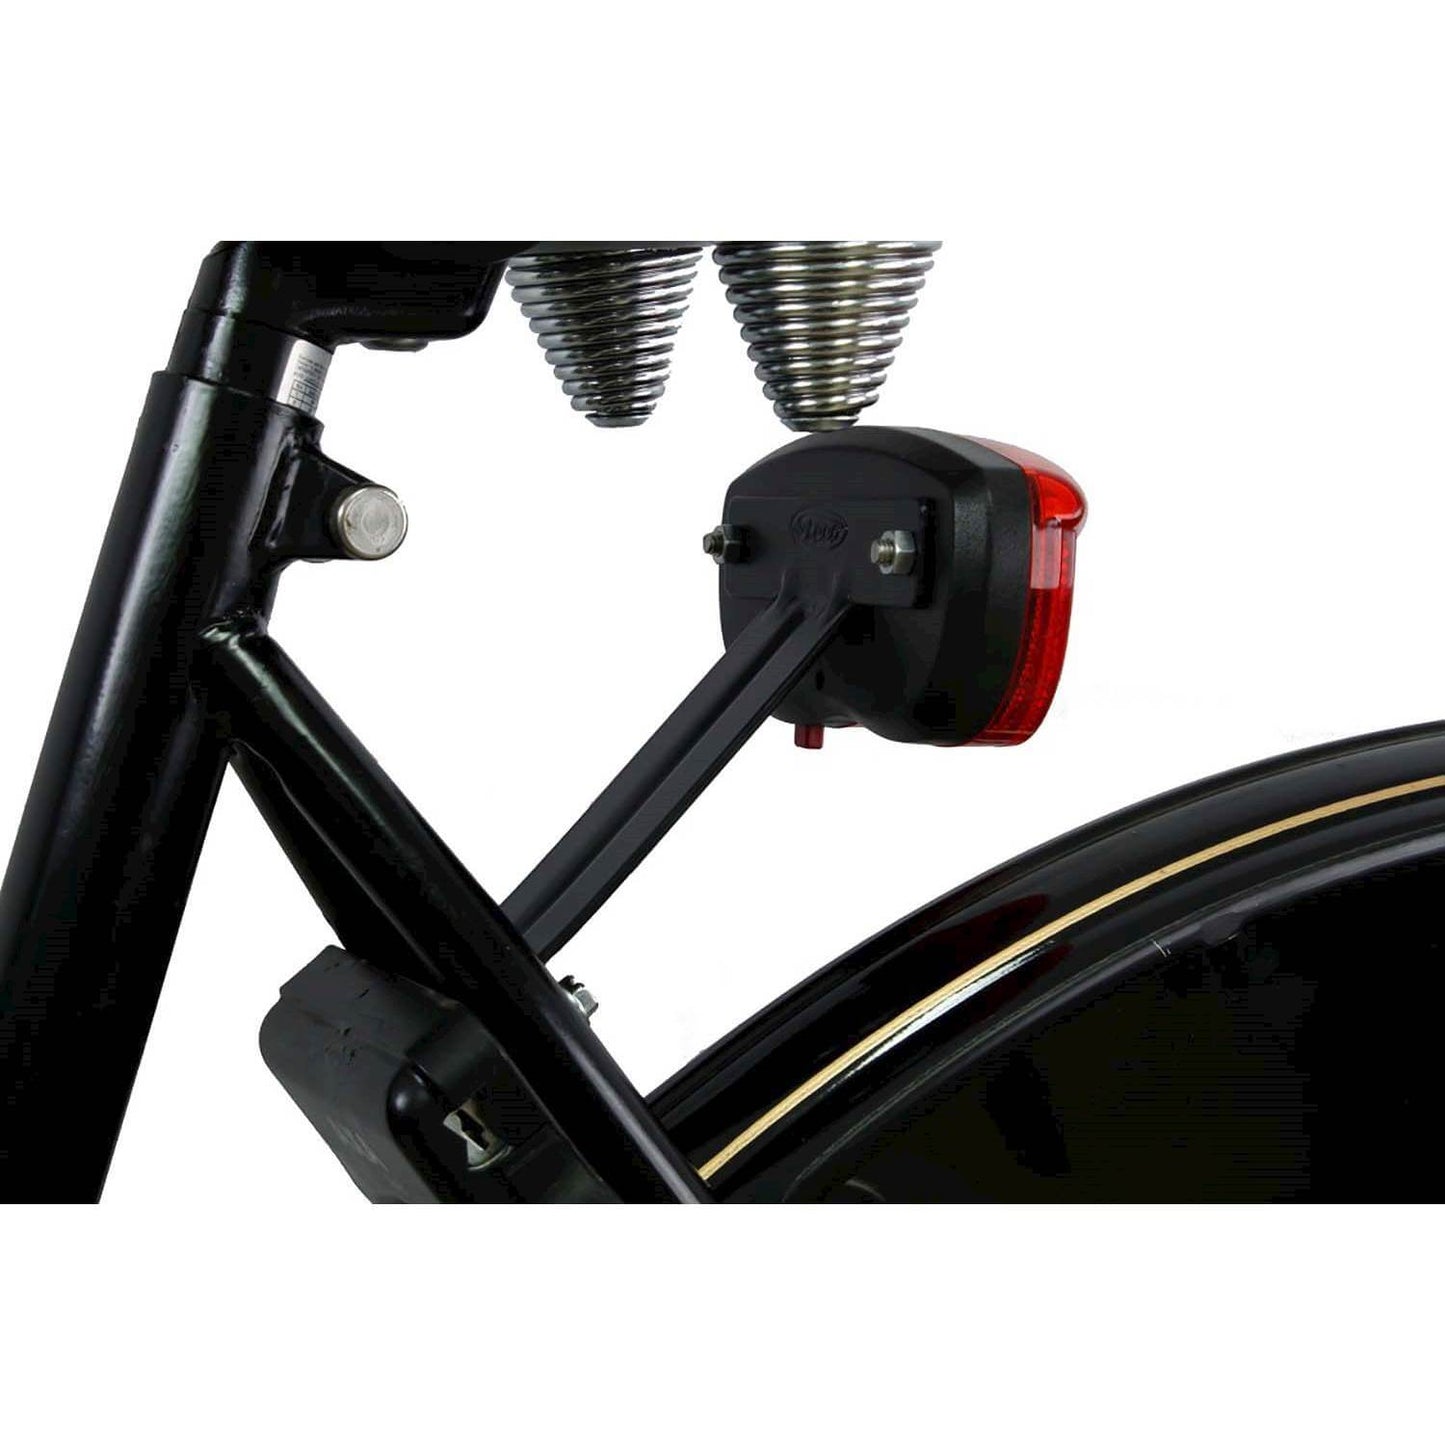 Steco achterlichtbeugel voor mont. op fietsframe (80mm)